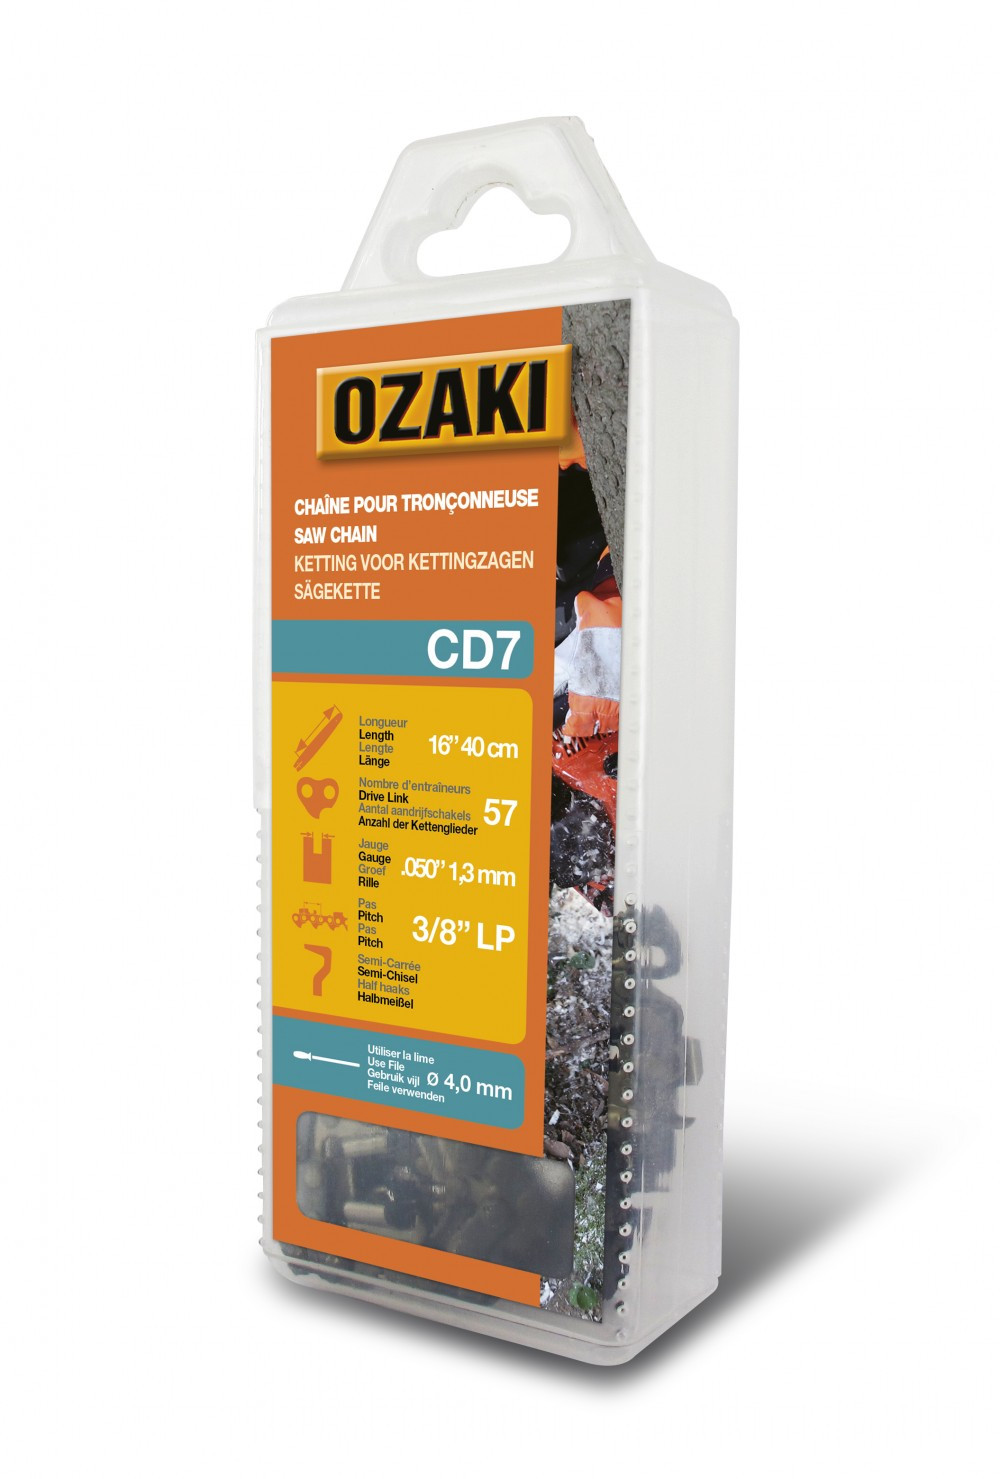 Chaîne de tronçonneuse OZAKI semi carrée: .3/8"LP .050 (1,3mm) 57 entraîneurs